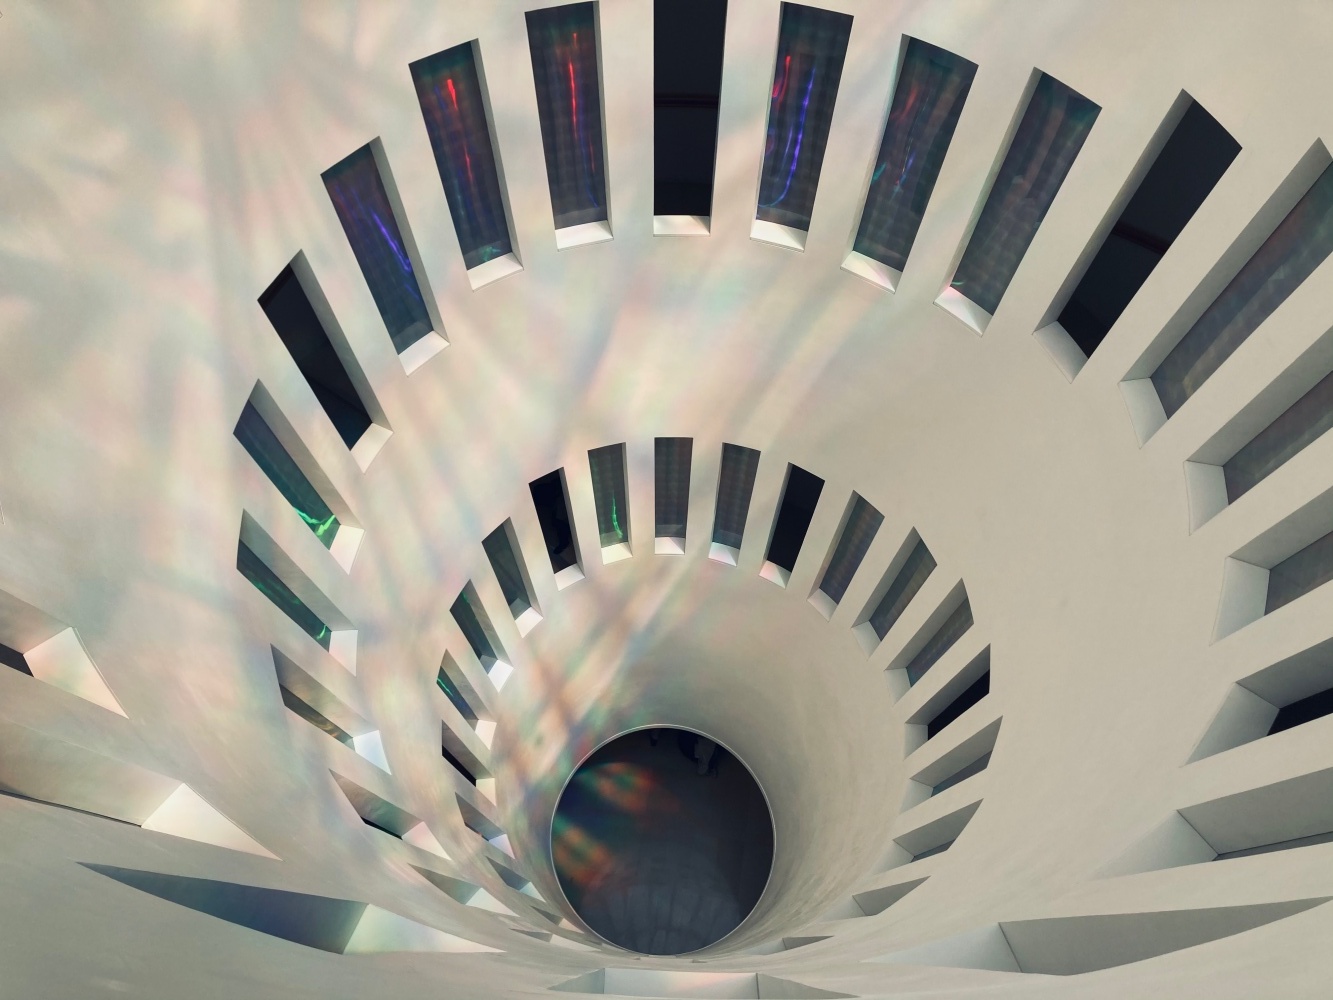 마리오 보타가 설계한 M1의 원형 계단 공간